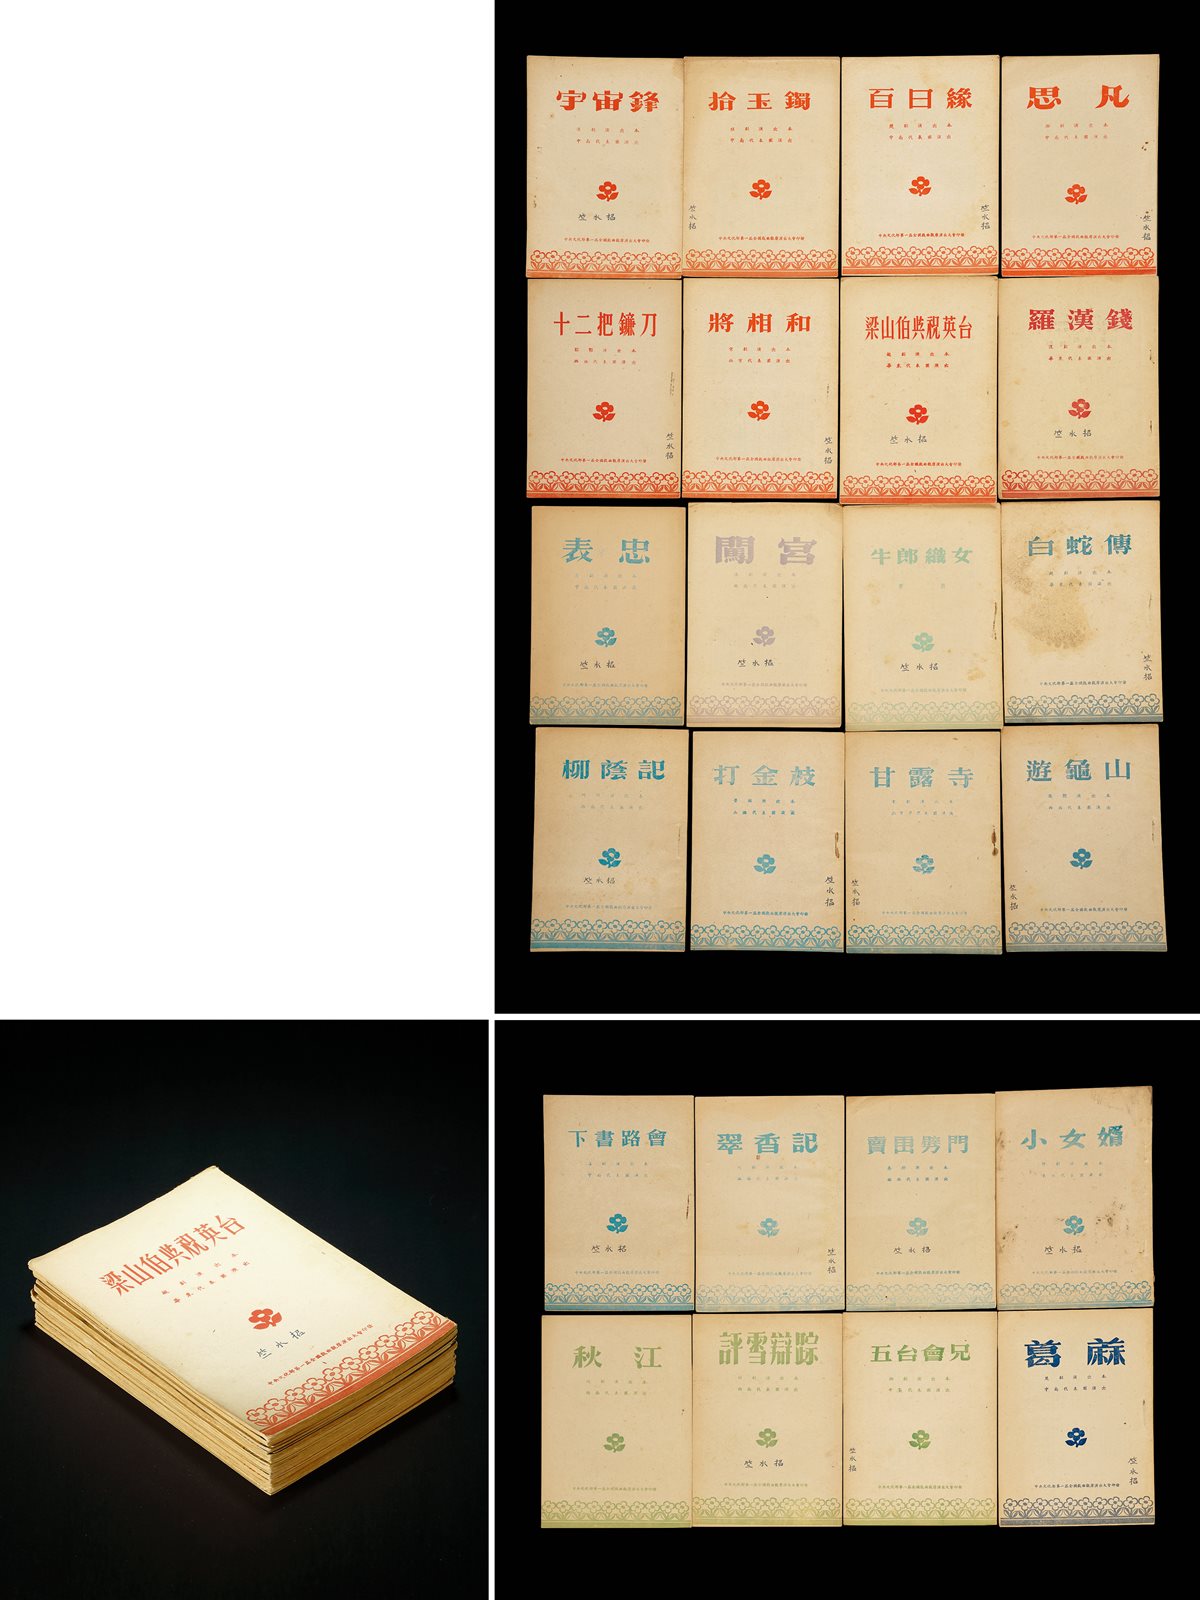 竺水招旧藏·剧目演出本 1952年第一届全国戏曲观摩演出大会刊印